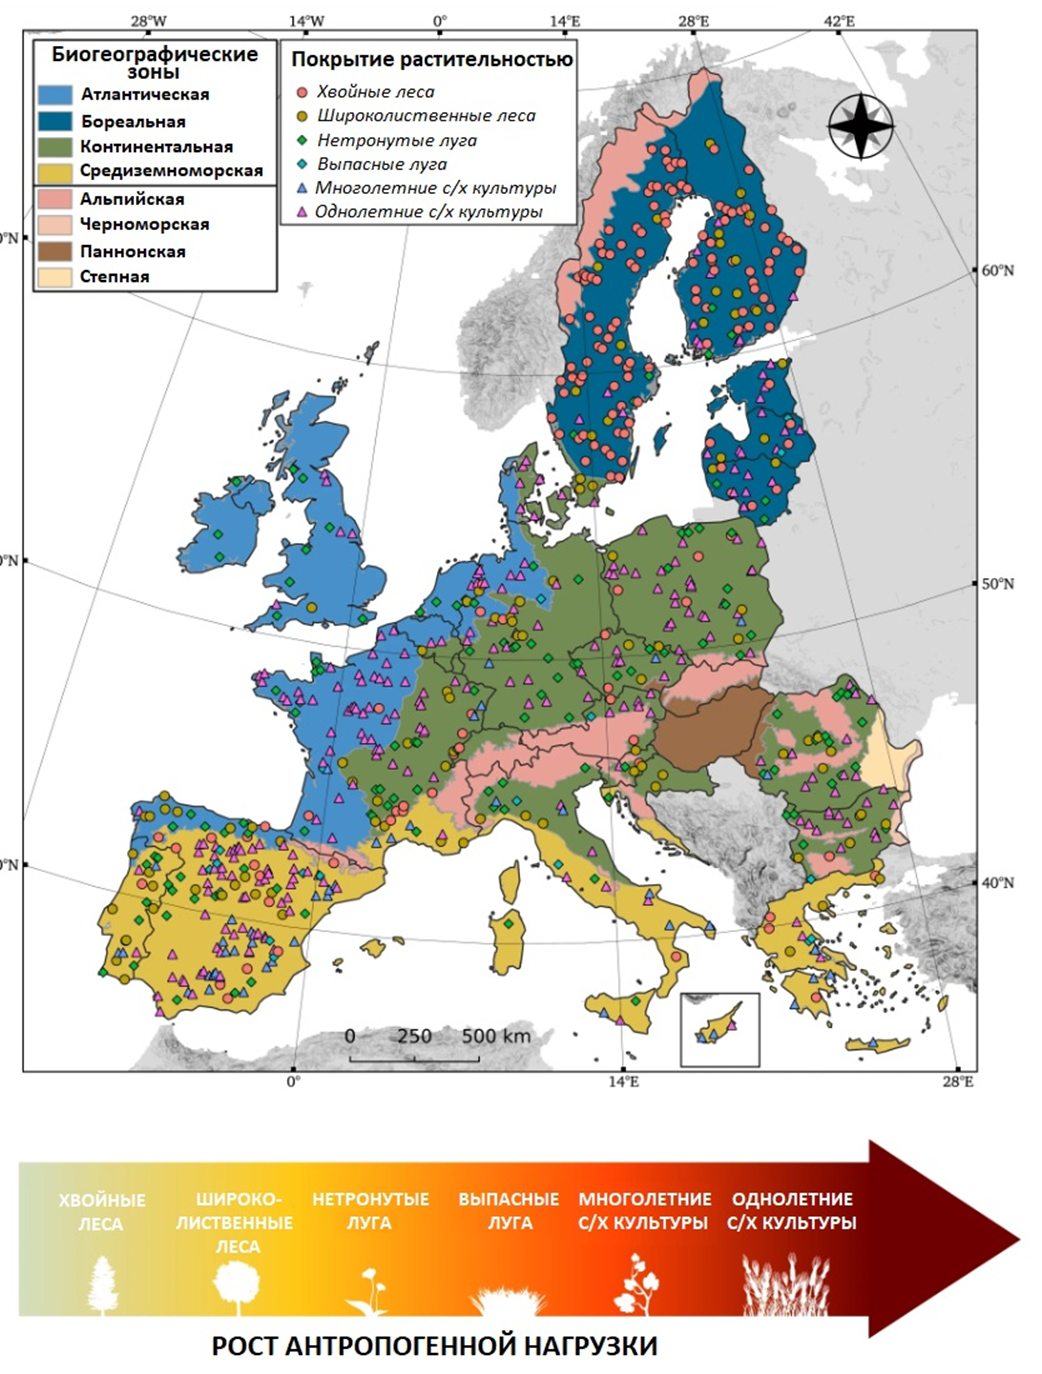 Мультиомиксное исследование деградации европейских почв